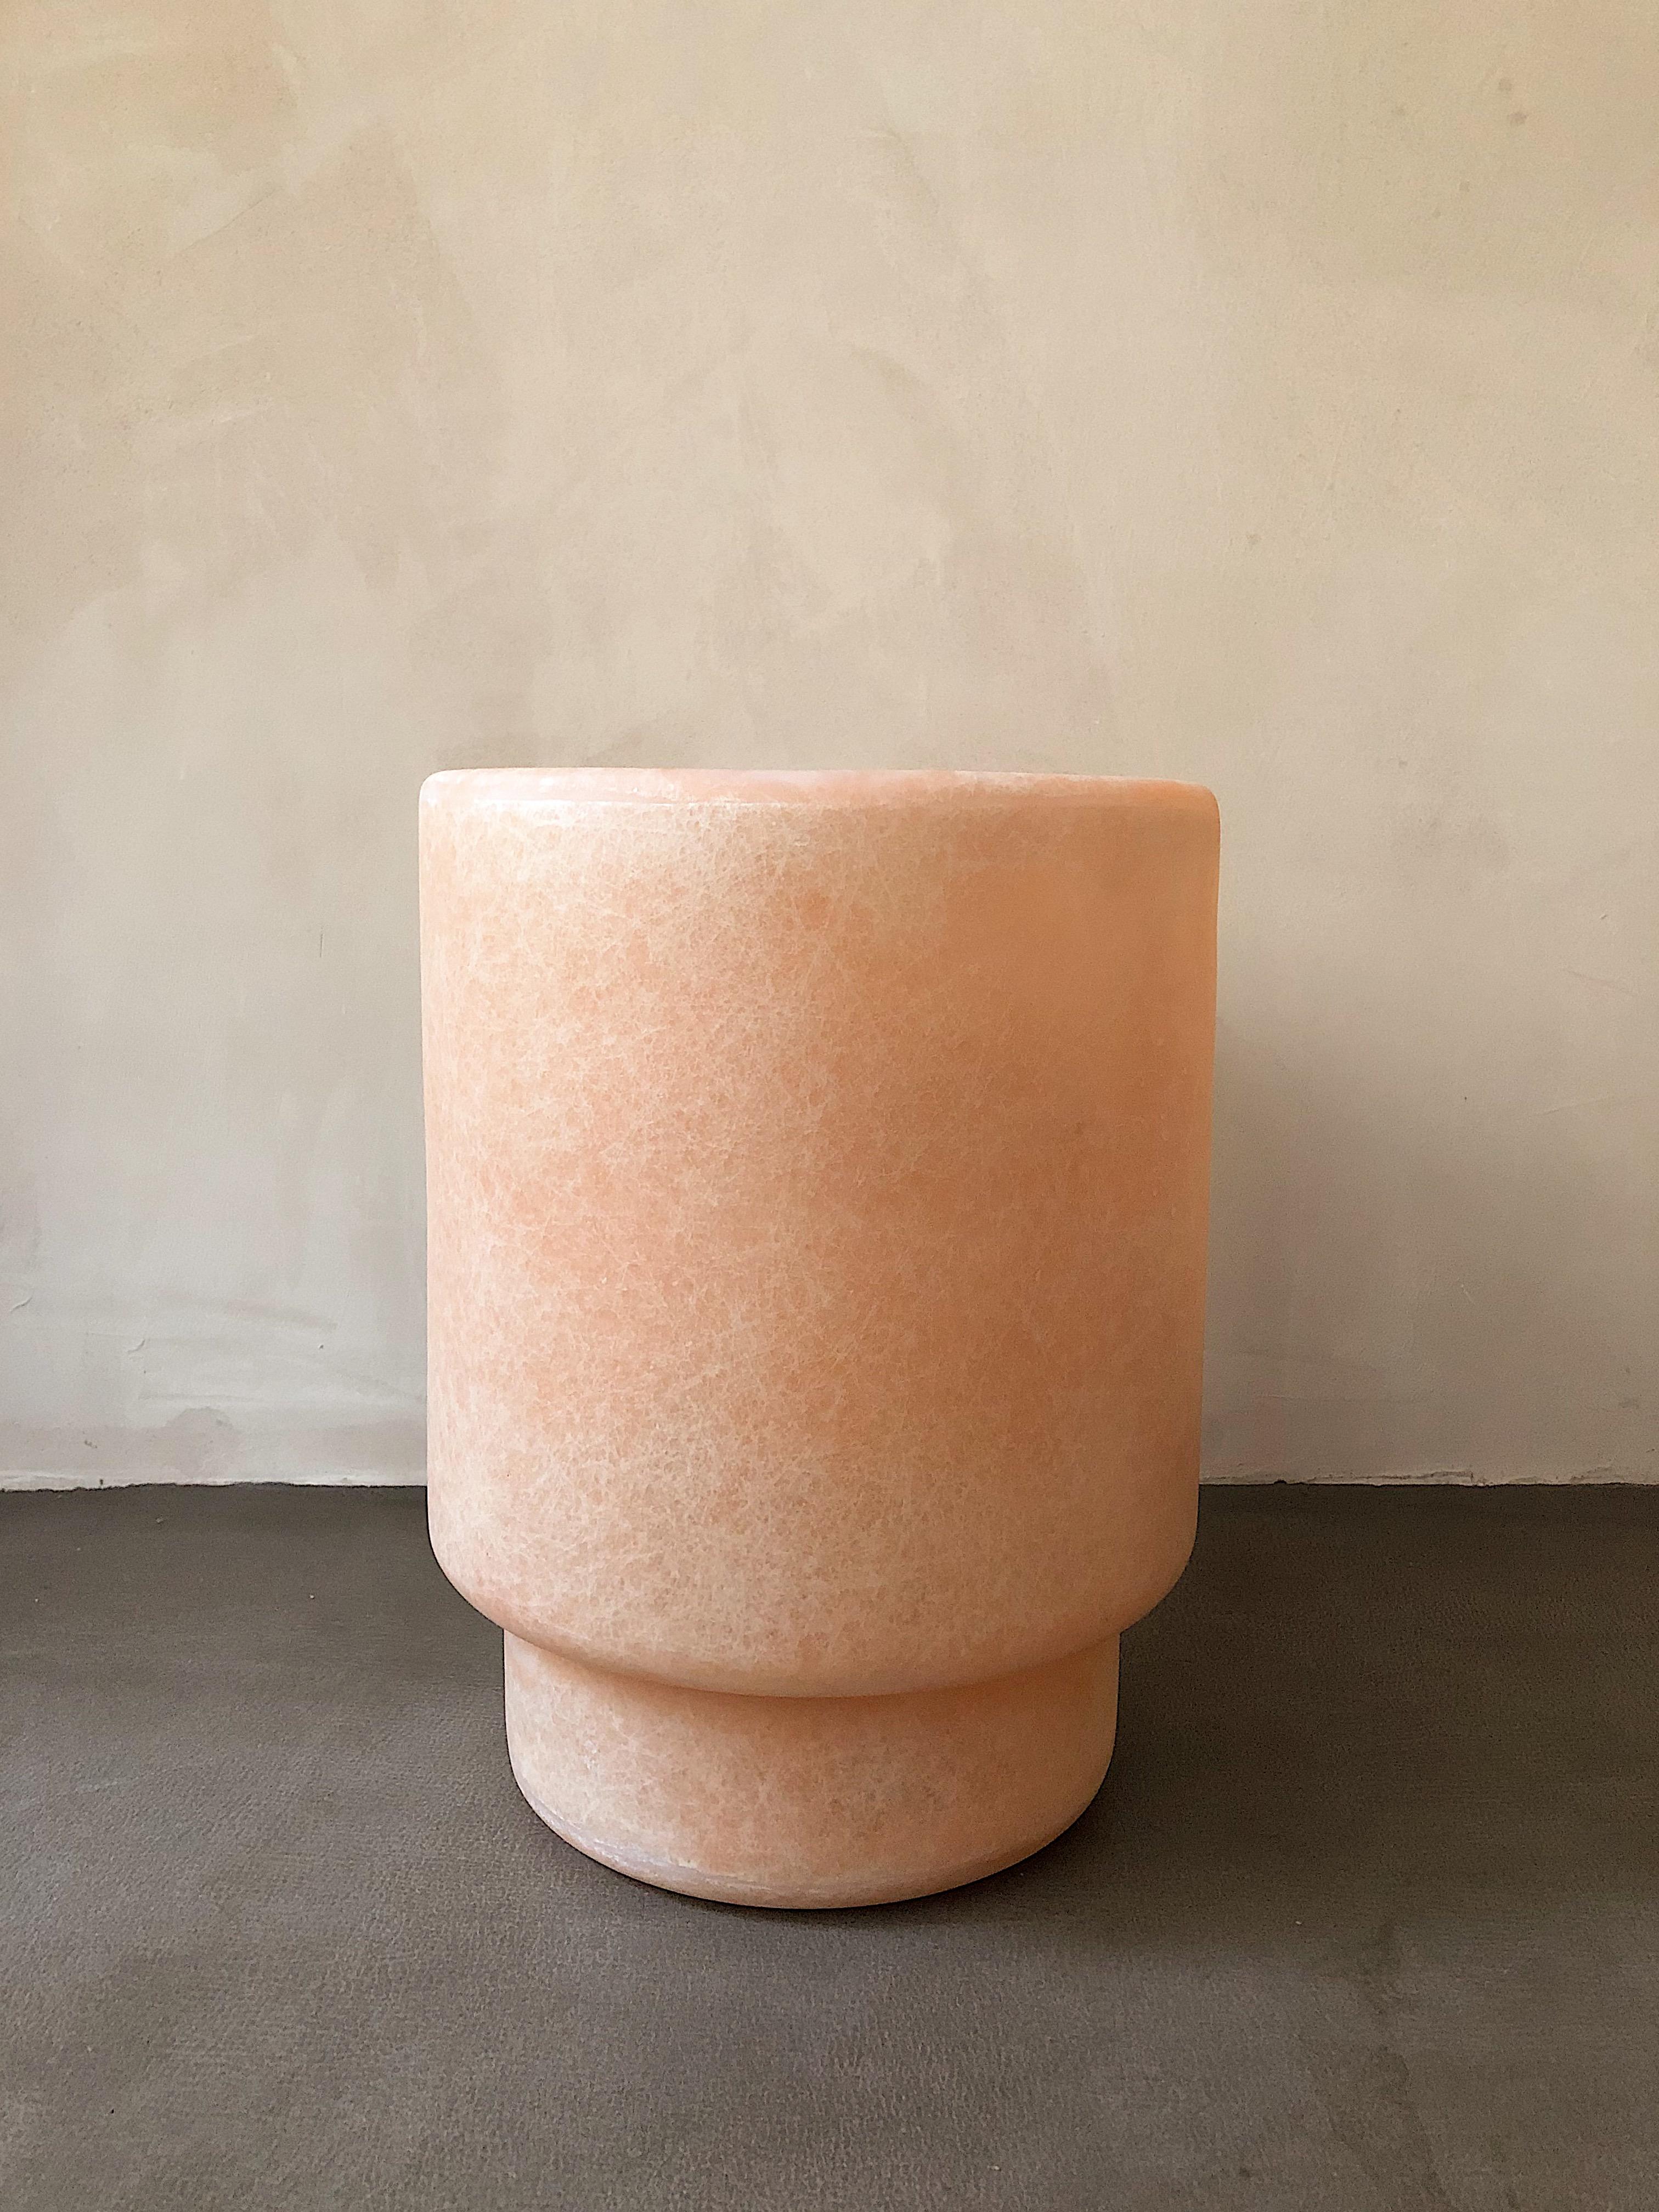 Tong rosa vase von kar
MATERIALIEN: FRP
Abmessungen: 26 x 26 x 34 cm

*Dieses Stück ist für den Außenbereich geeignet.

Eine glatte Form, die sich in jeden Raum integrieren lässt. Vielseitig verwendbar: als Blumenvase, als Behälter für Entwürfe,